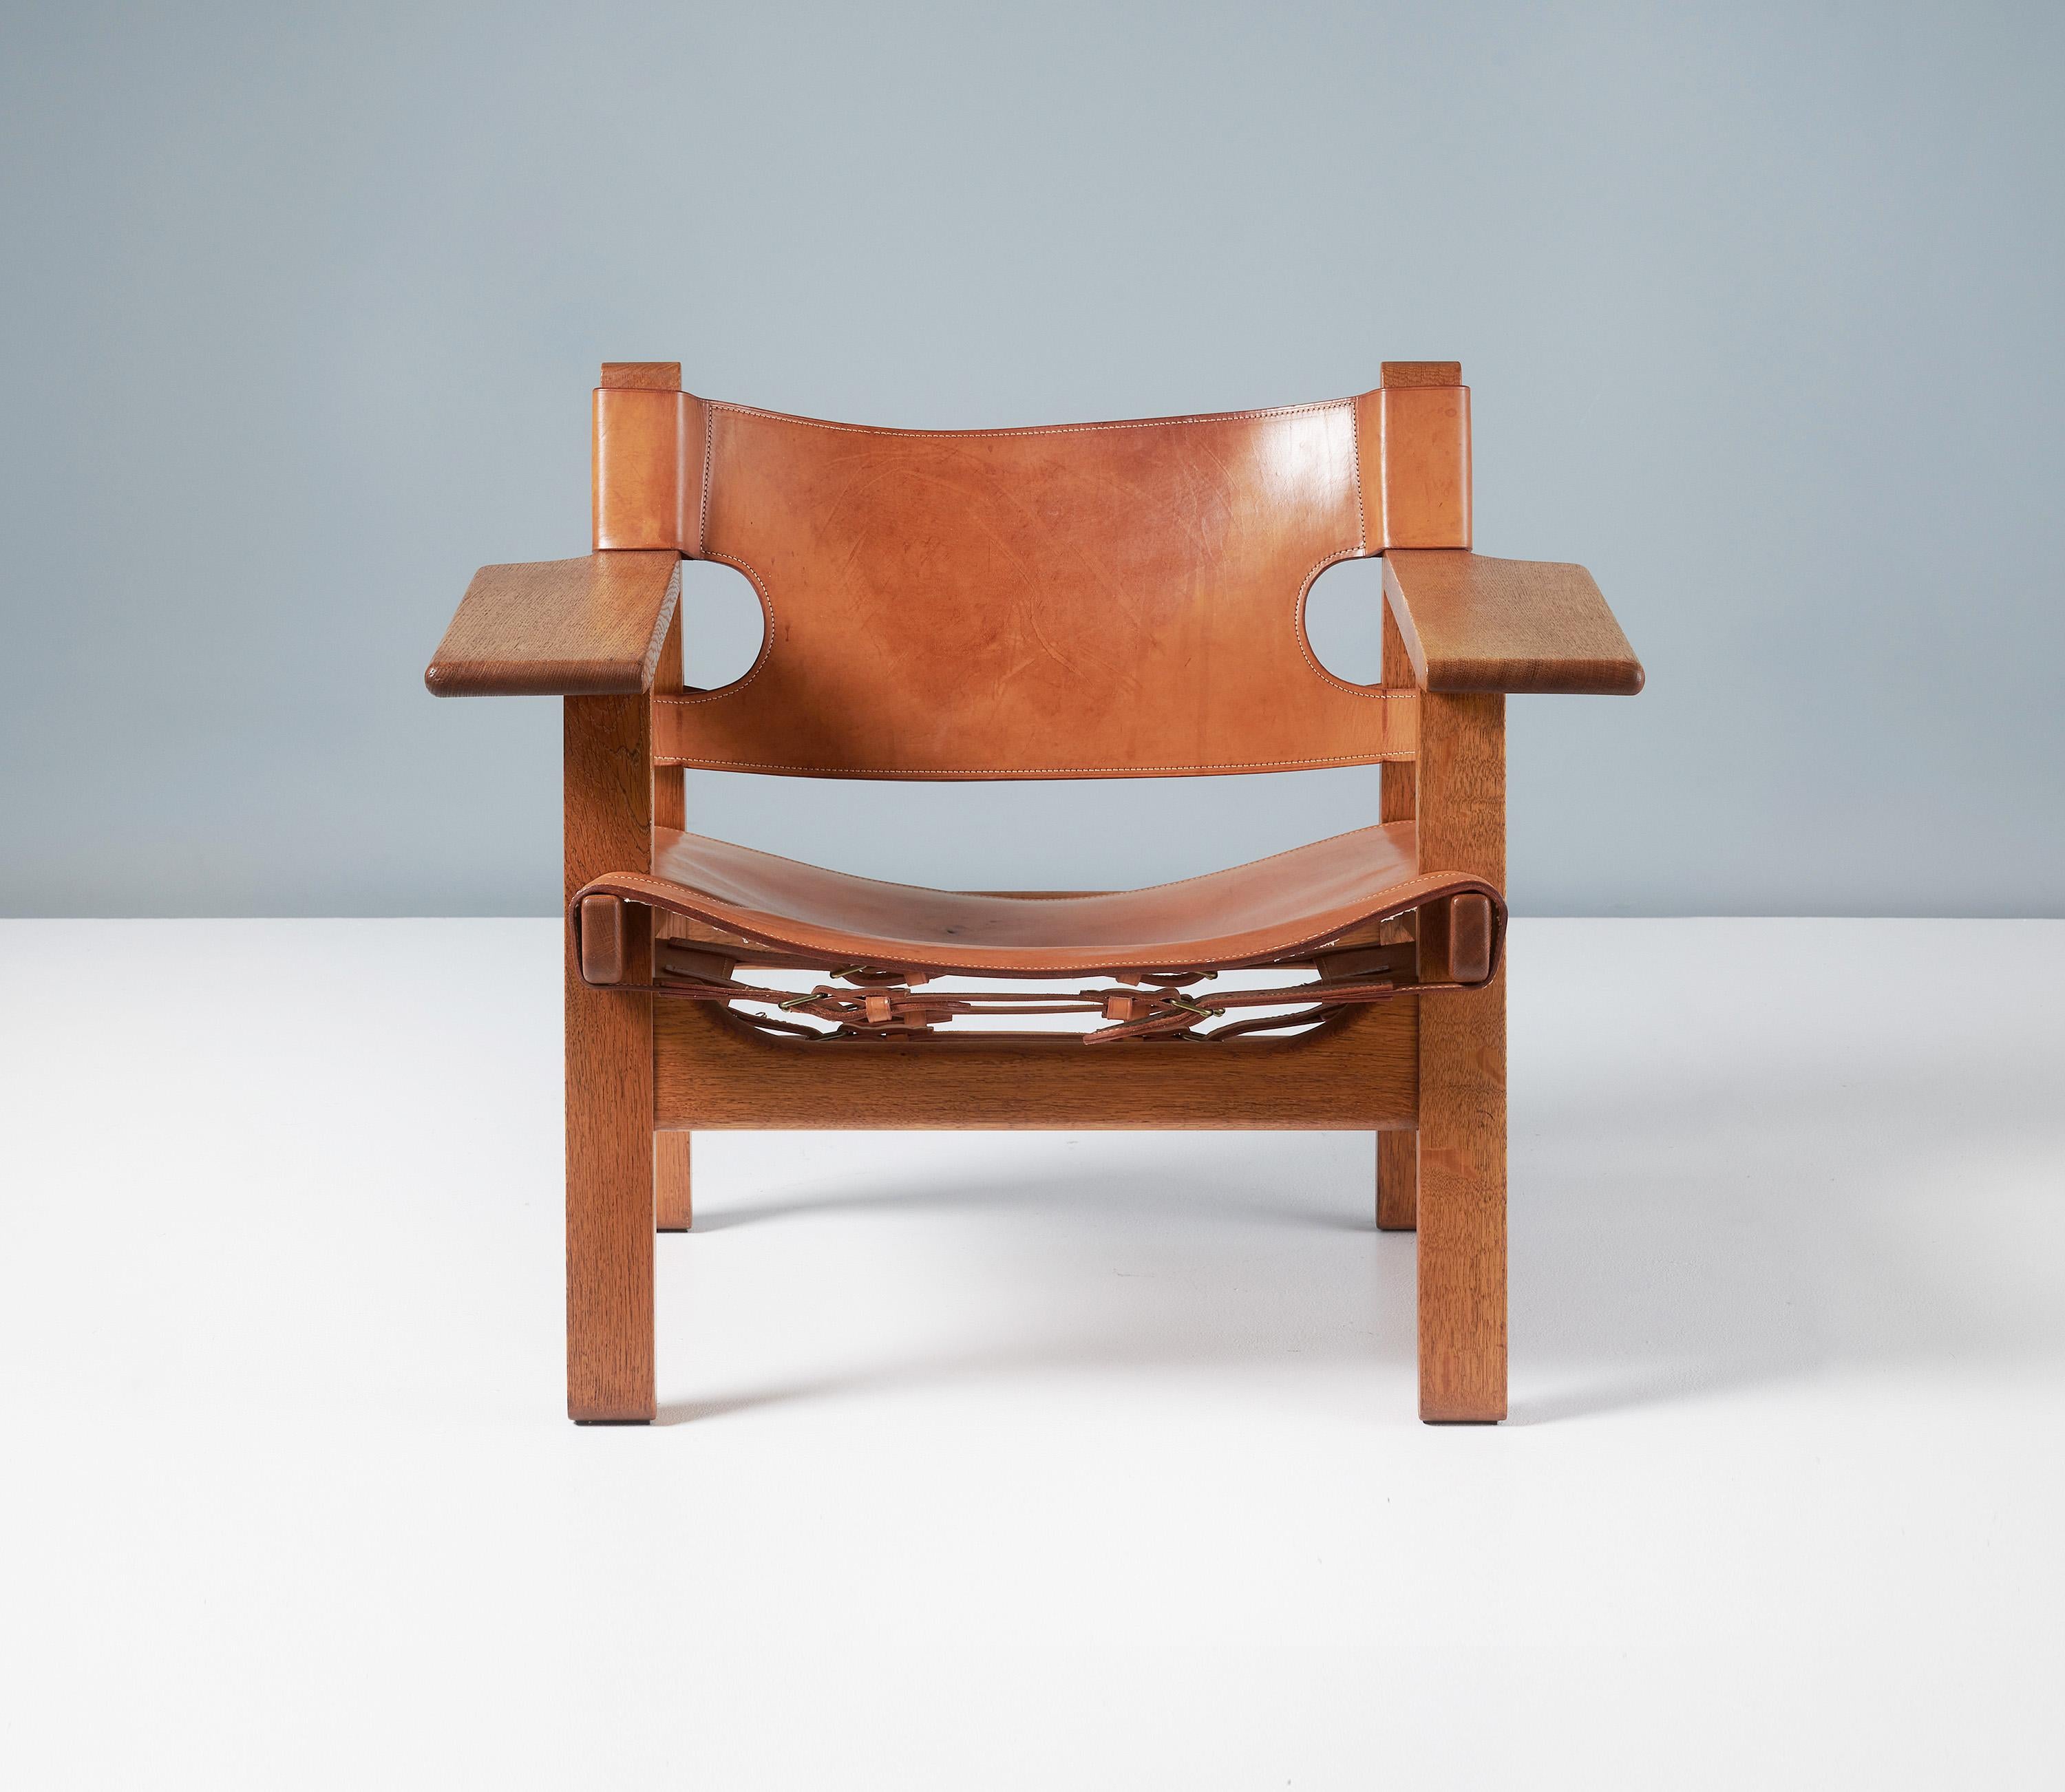 Børge Mogensen - La chaise espagnole, c1958

Fabriqué par Fredericia Stolefabrik, Copenhague, Danemark. Cadre en chêne magnifiquement patiné et vieilli, assise et dossier en cuir de selle patiné d'origine et ferrures en laiton. Ce magnifique